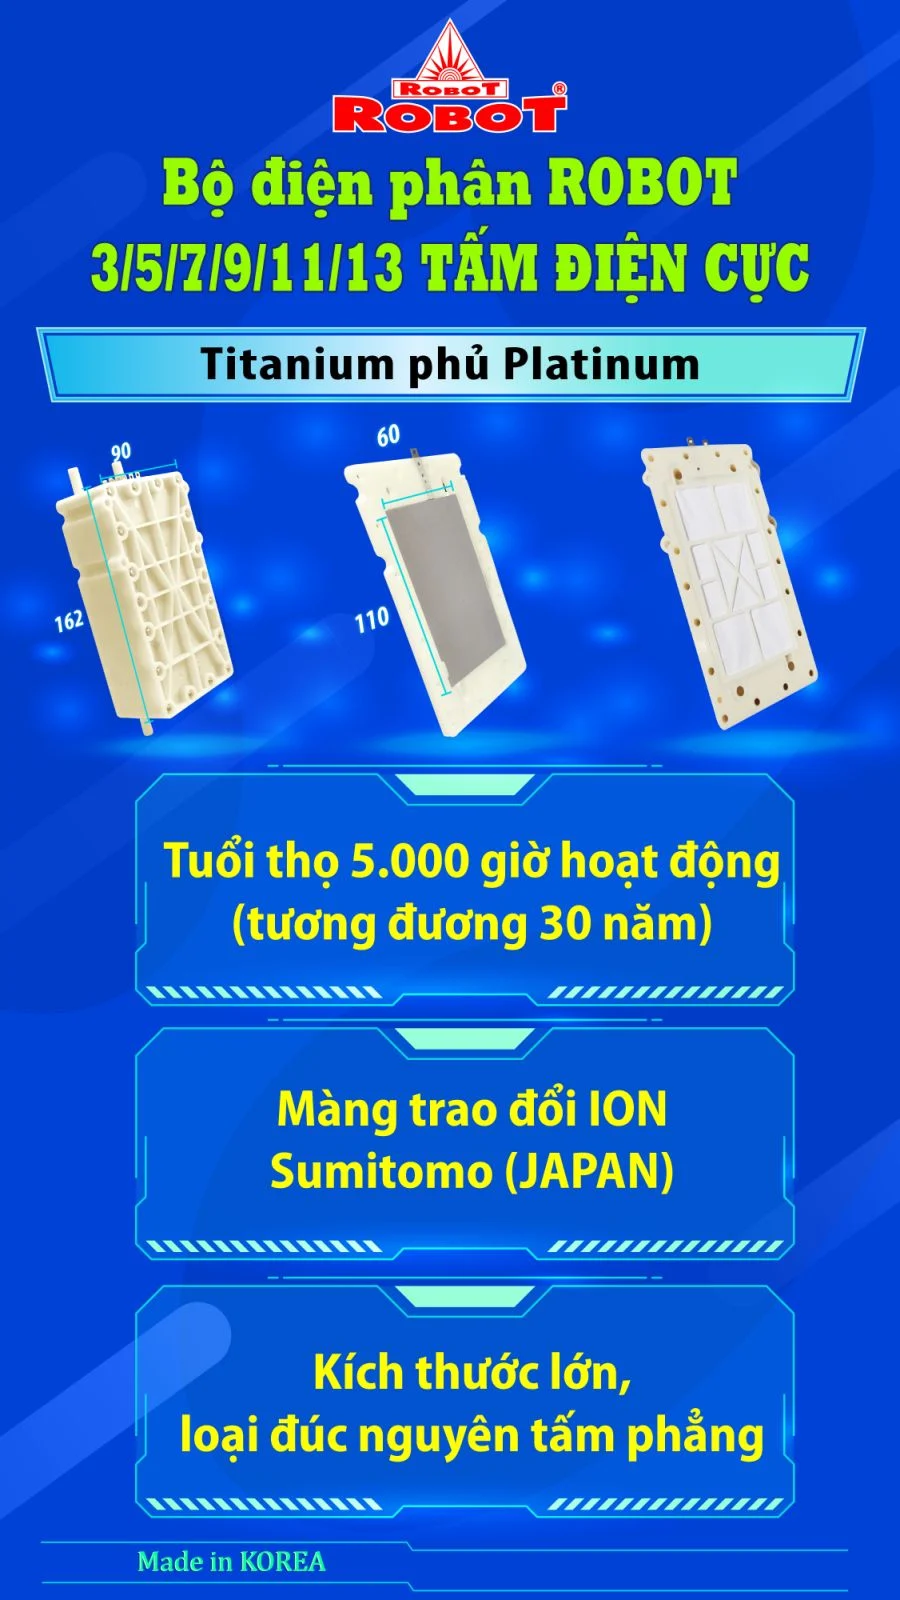 Bộ điện phân đến 3 tấm điện cực Titanium phủ Platinum của IONKING 1113